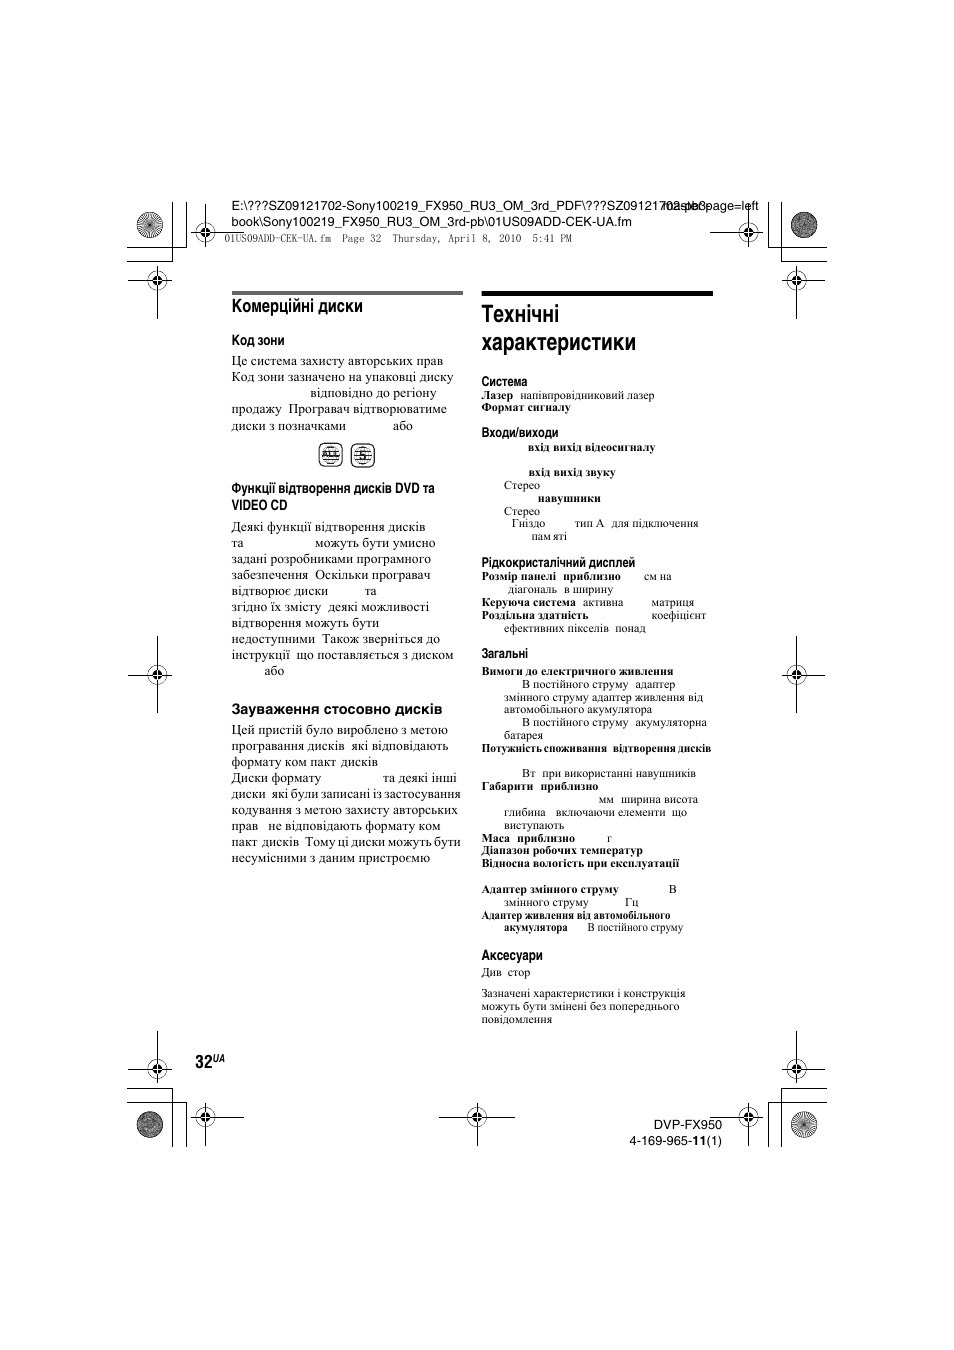 Технічні характеристики, Комерційні диски | Инструкция по эксплуатации Sony DVP-FX950 | Страница 64 / 68